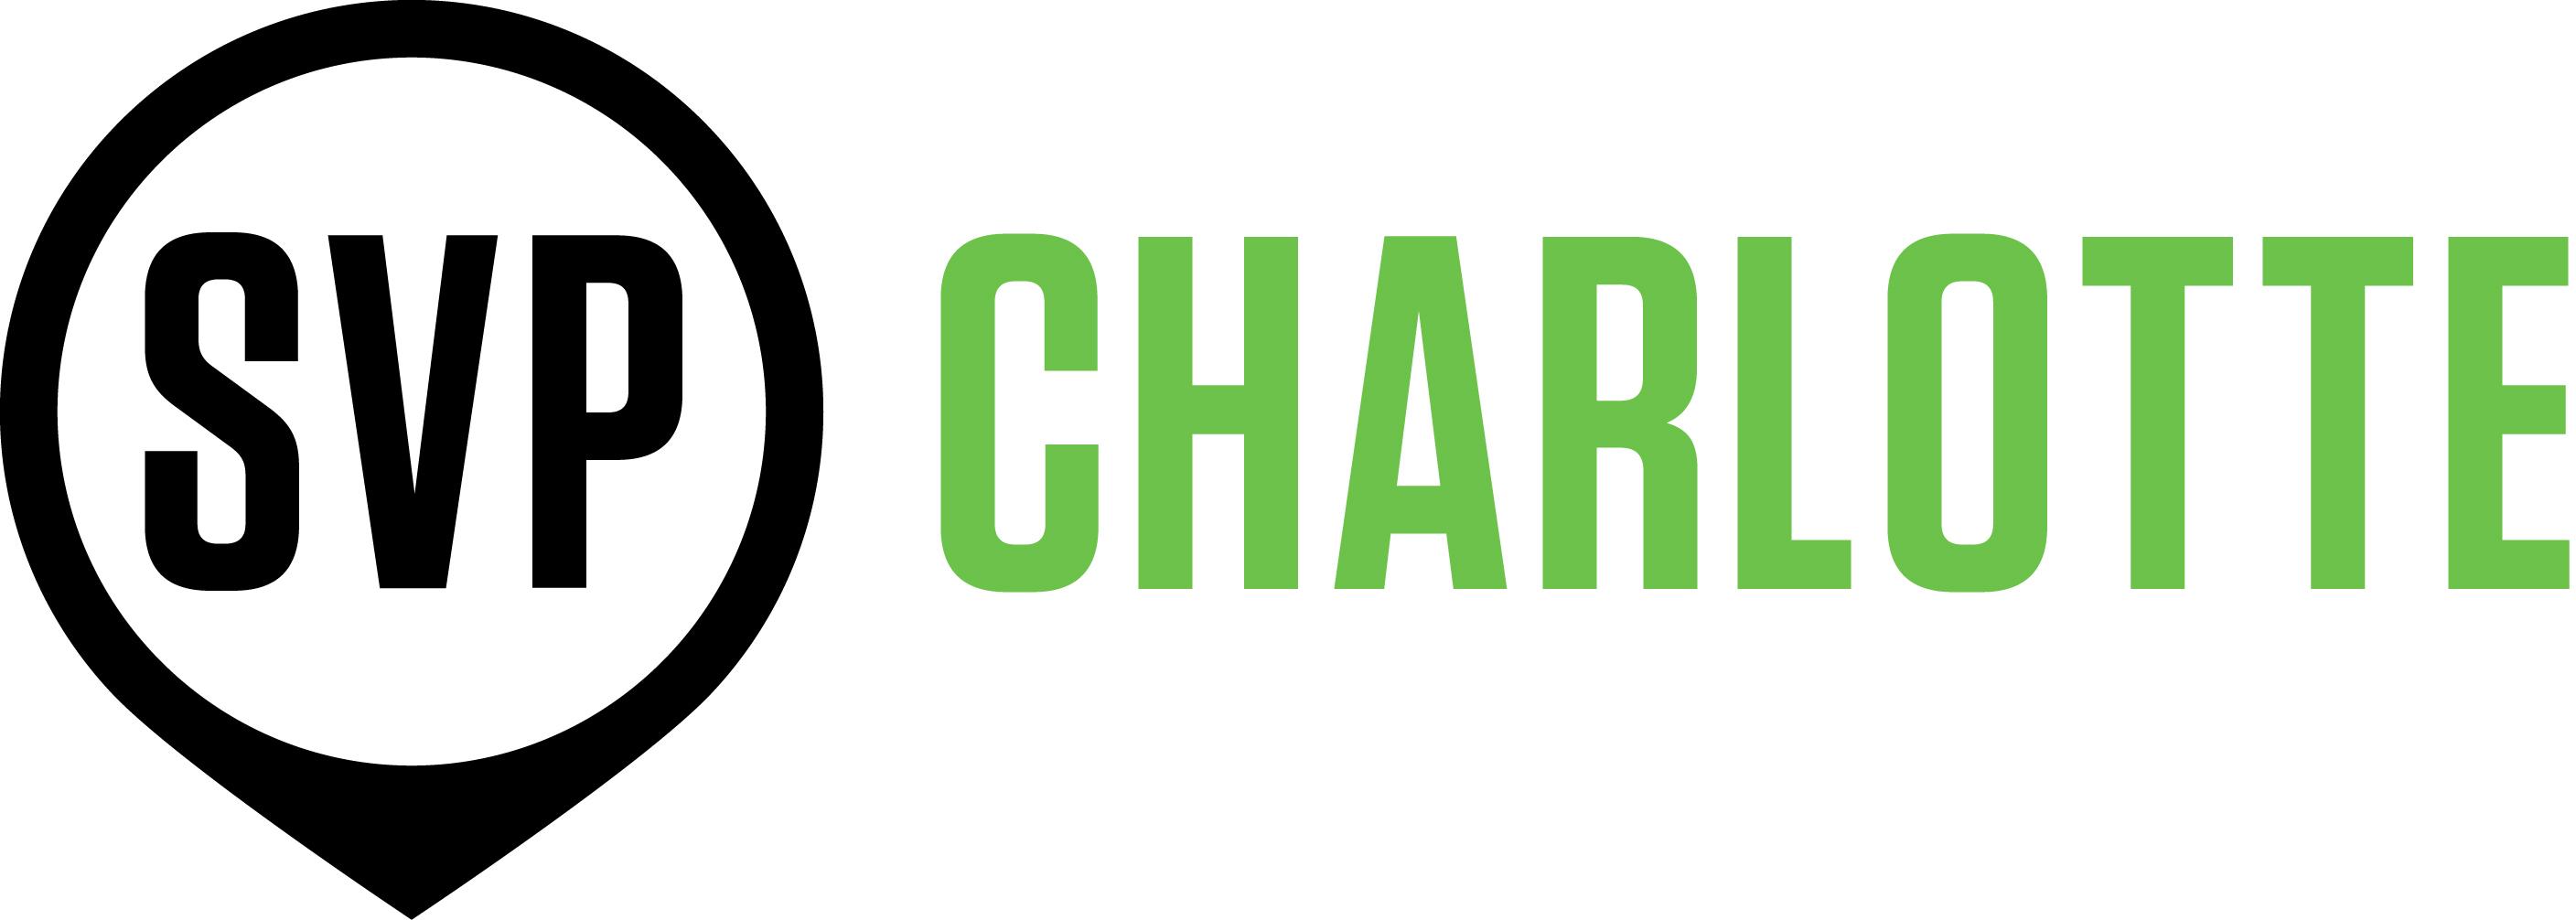 Charlotte Logo - SVP Charlotte SVP Charlotte Logo